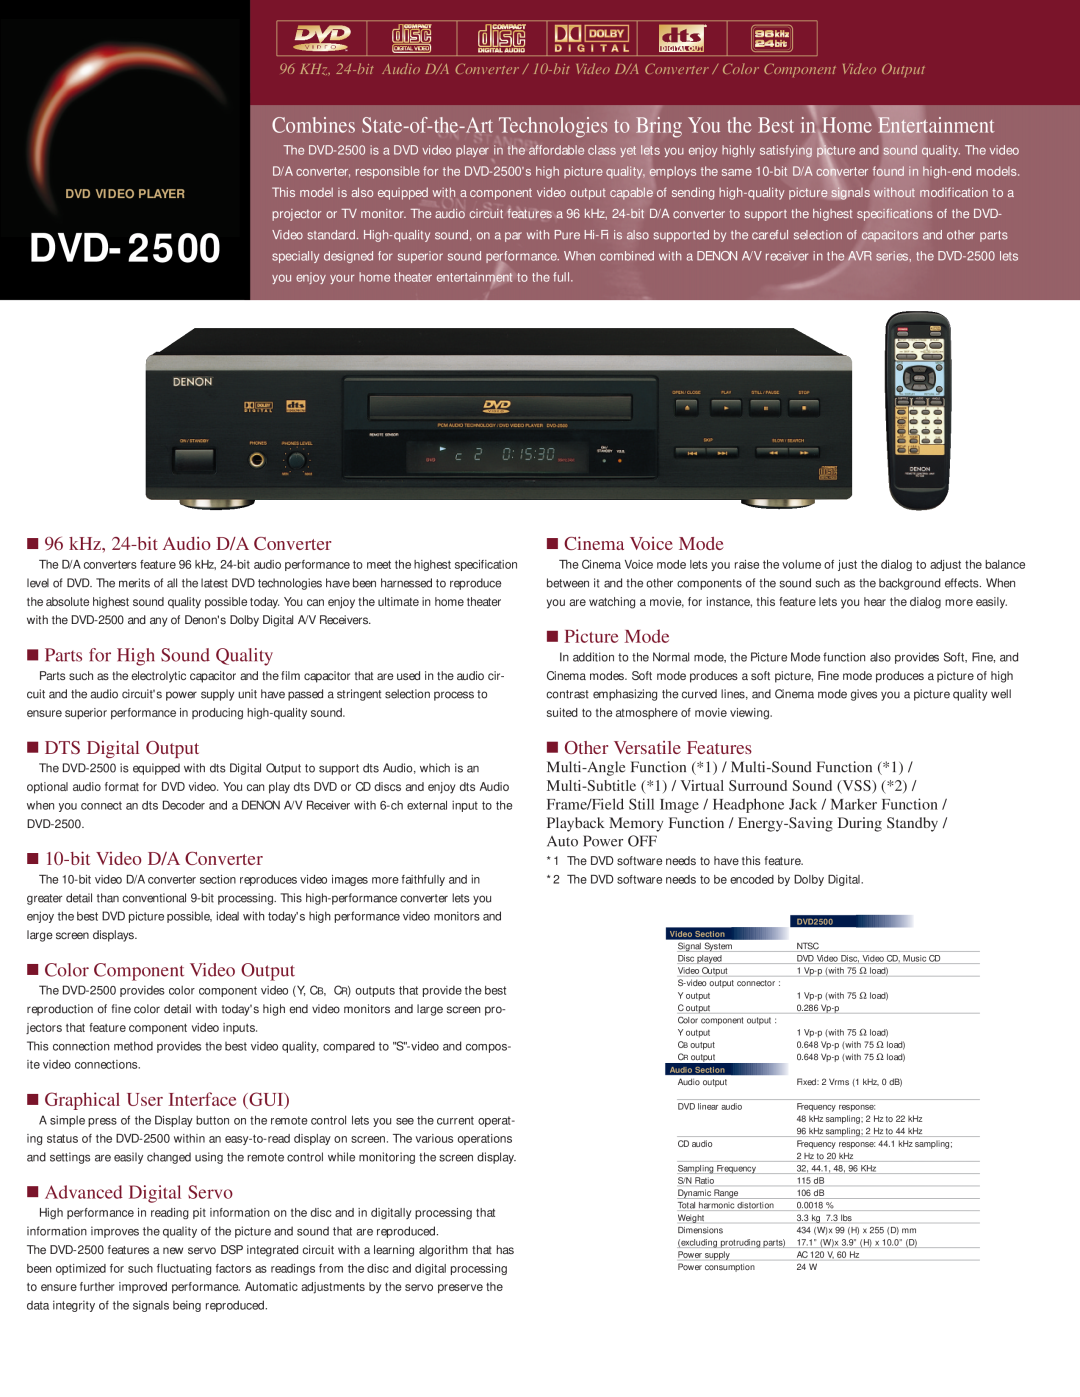 Denon DVD-2500 dimensions 